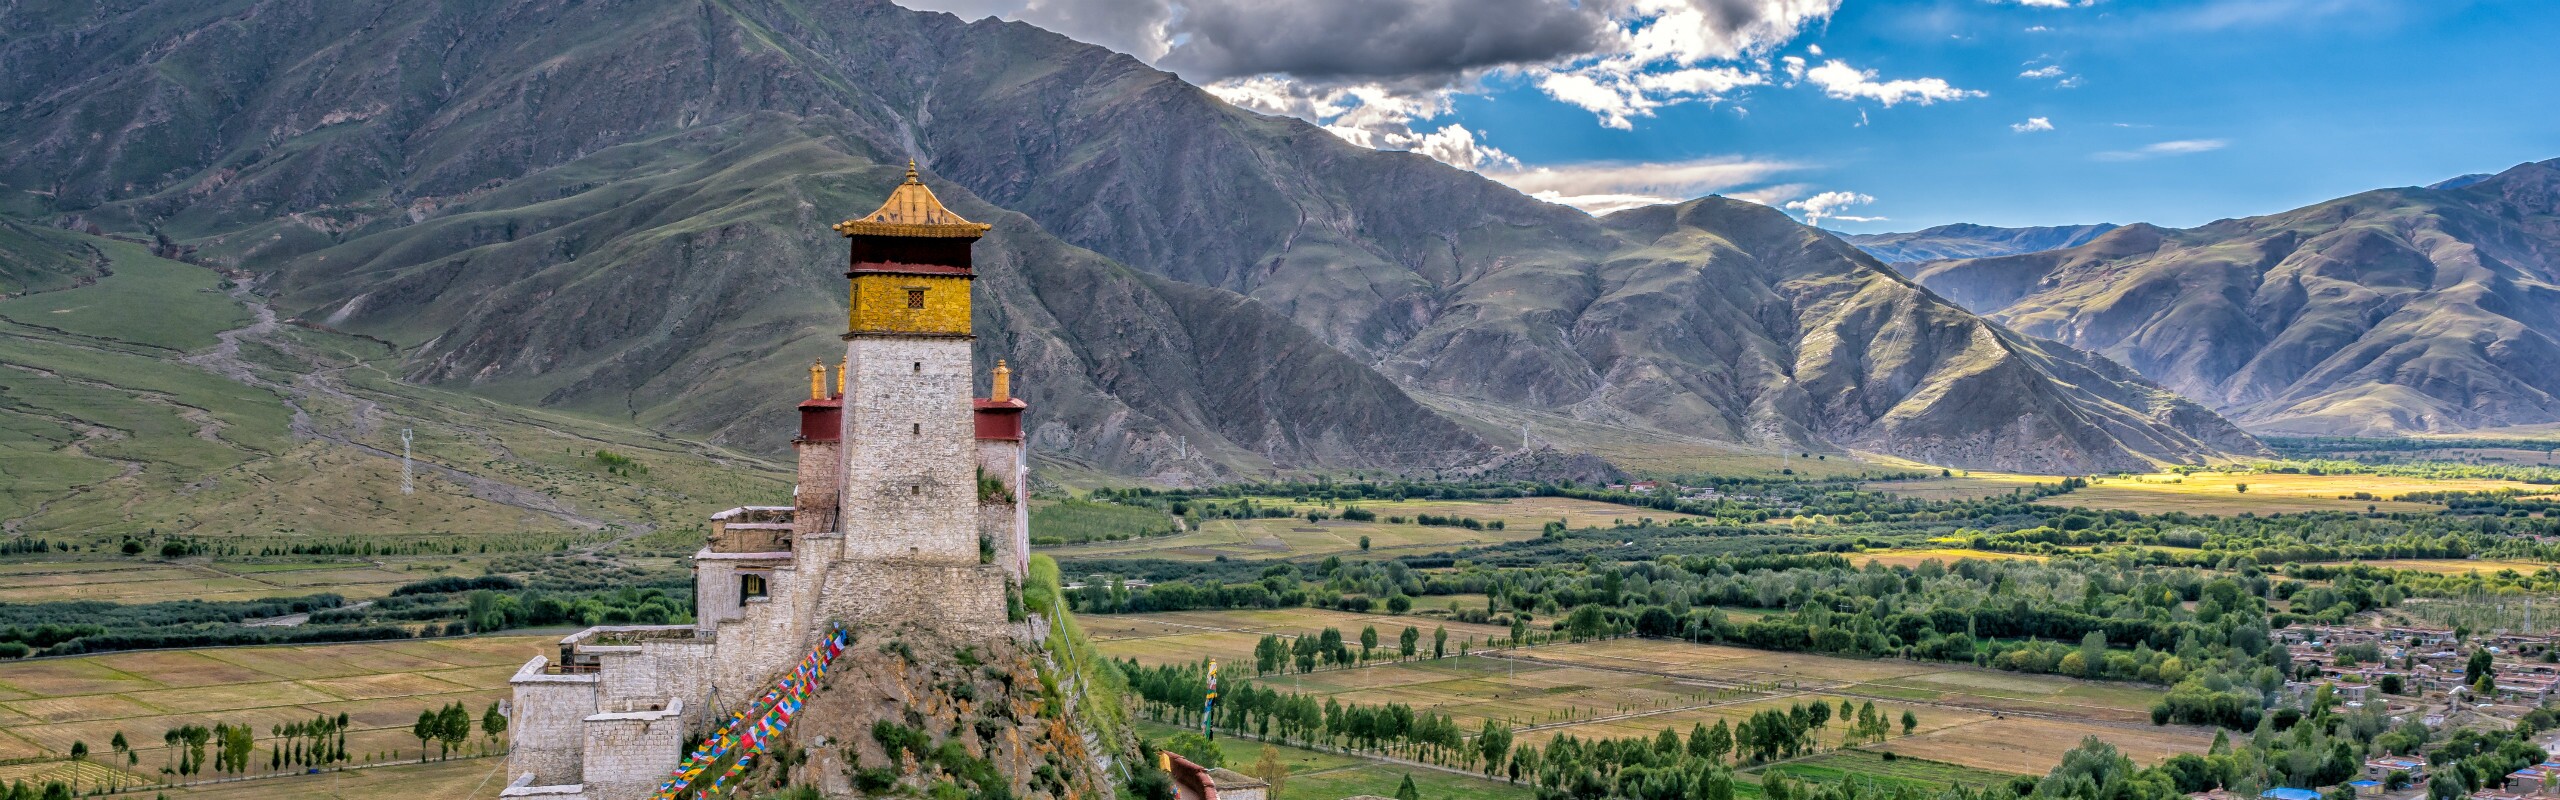 8-Day Tibet Tour including Tsedang, Shigatse, and Lhasa